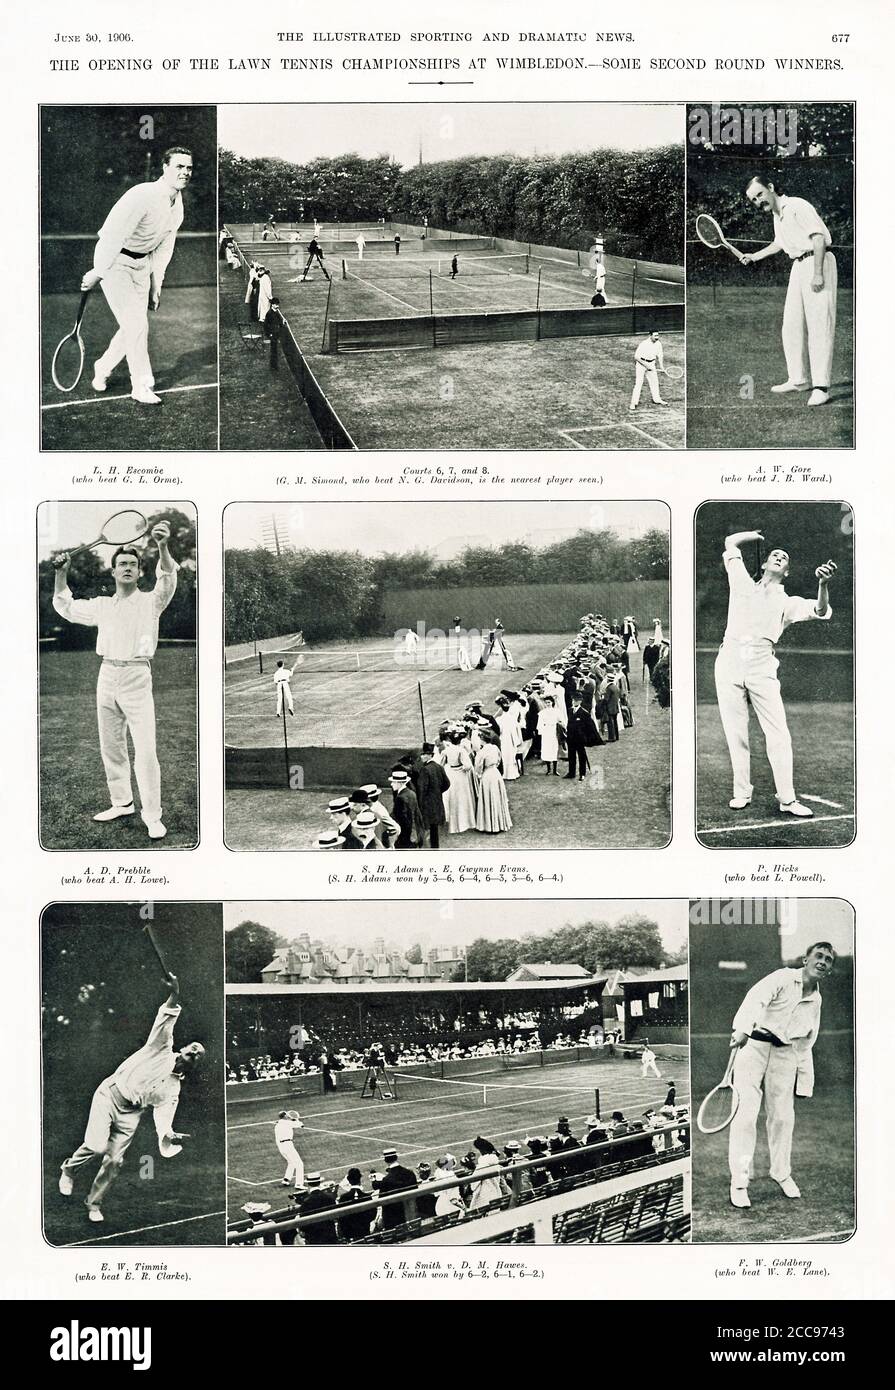 Wimbledon, revista 1906 de la apertura de los Campeonatos de Tenis de césped en junio con algunos ganadores de la segunda ronda Foto de stock